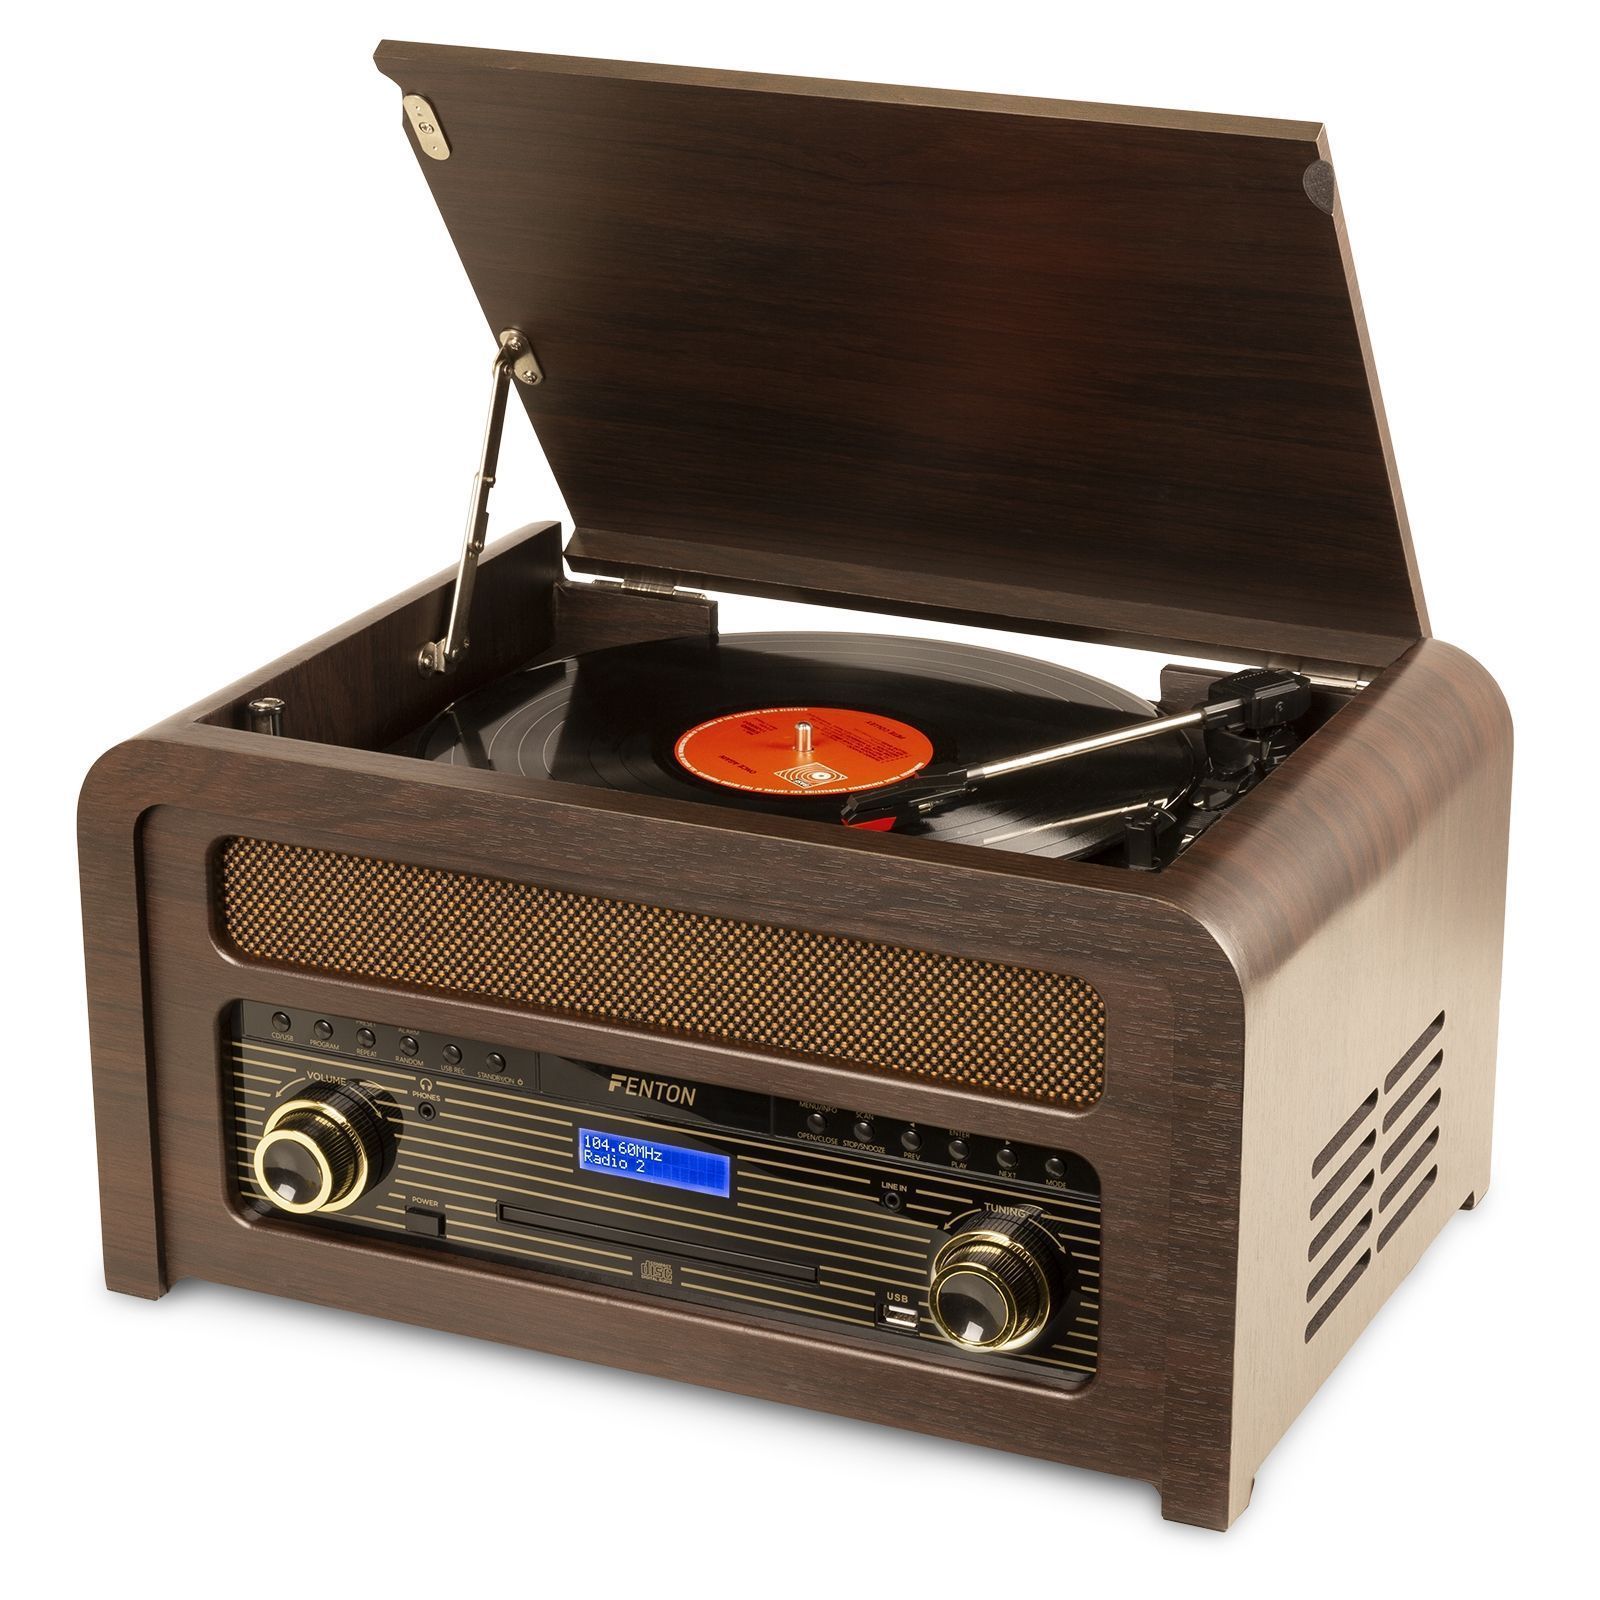 Fenton Nashville retro skivspelare med Bluetooth, CD-spelare, FM och DAB-radio